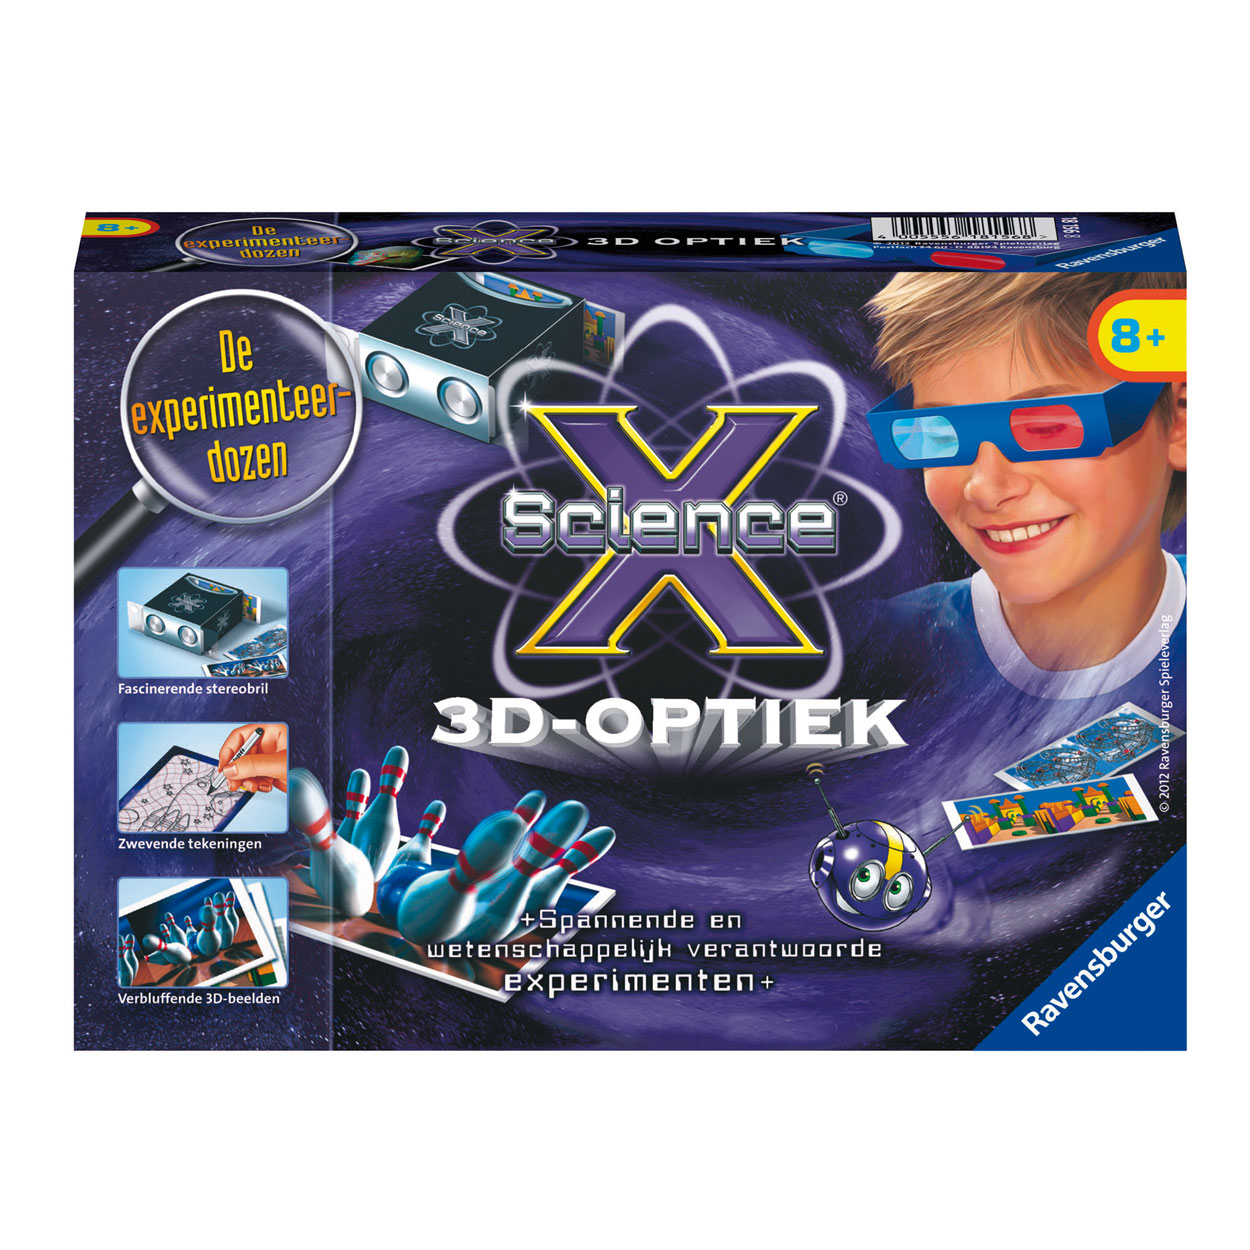 ScienceX 3D-Optiek